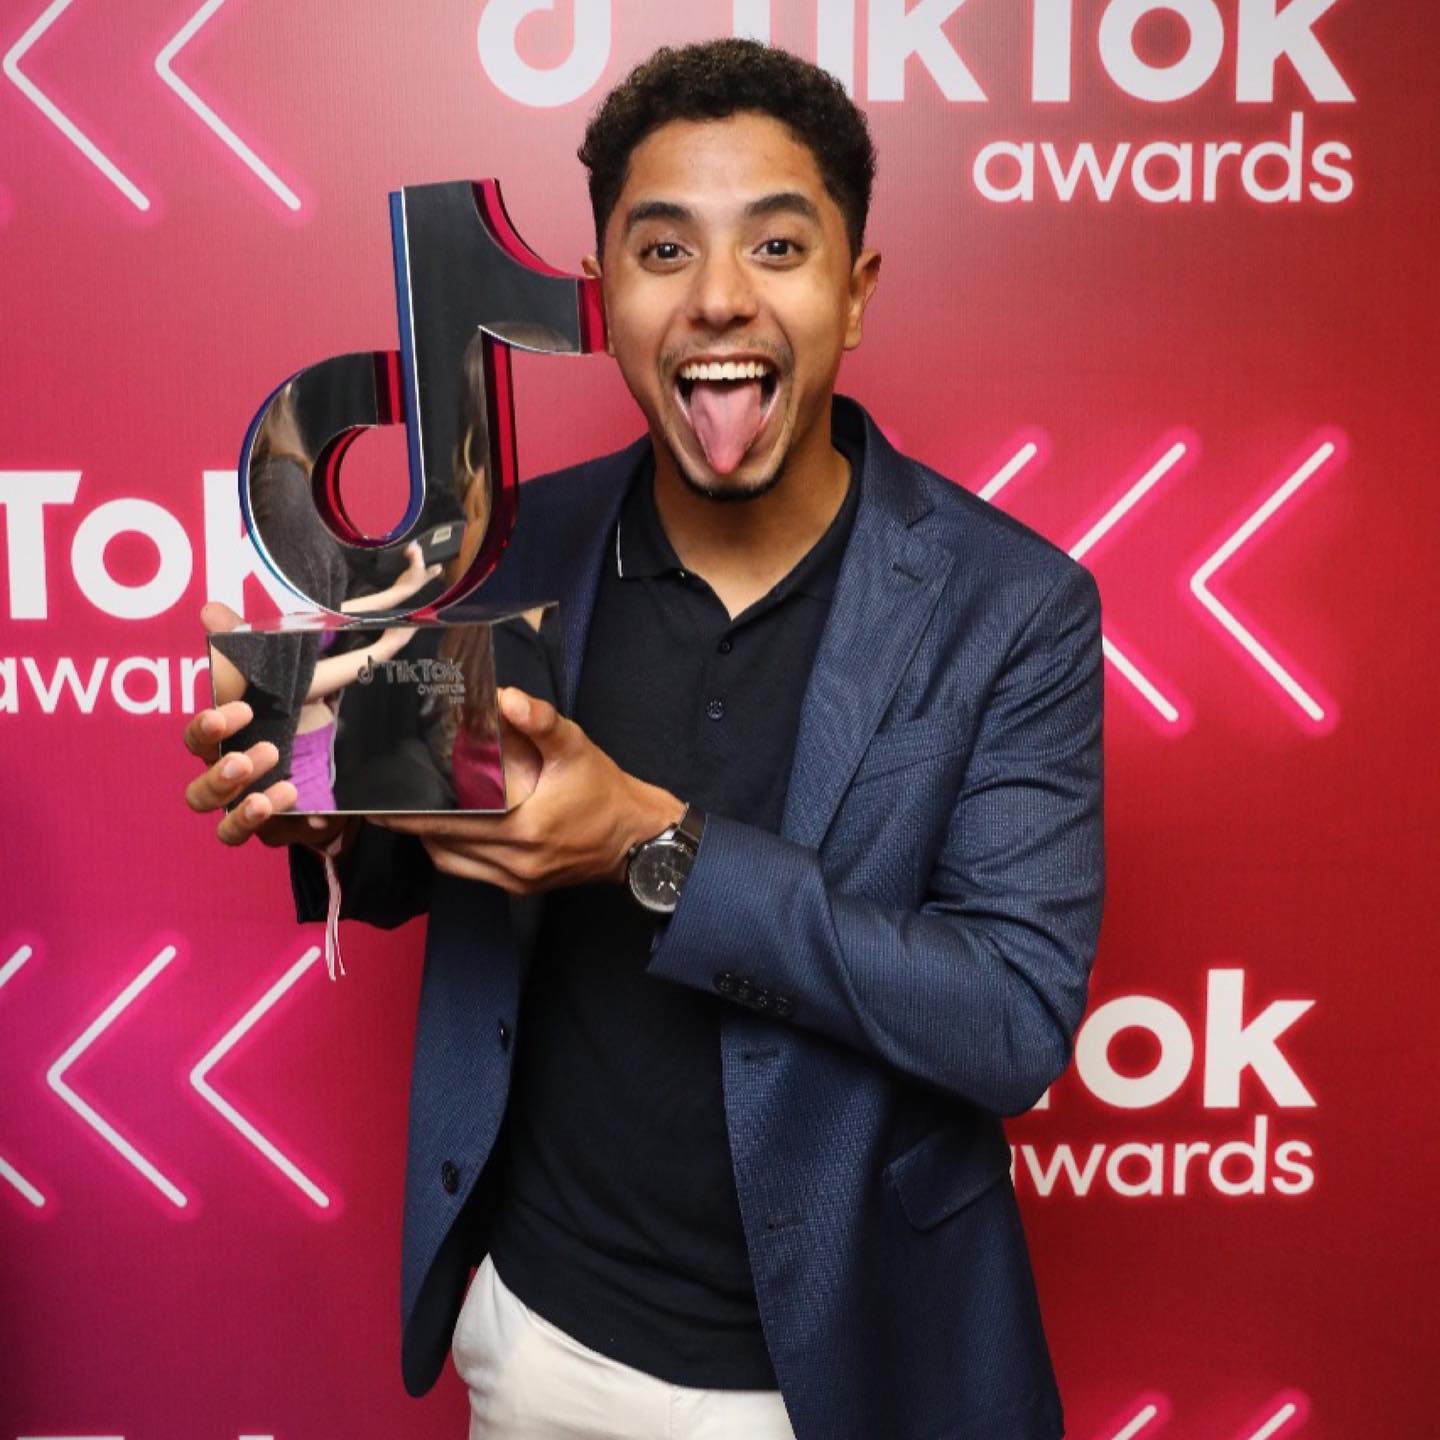 Gustavo com troféu recebido no "TikTok Awards". Foto: Reprodução/Facebook